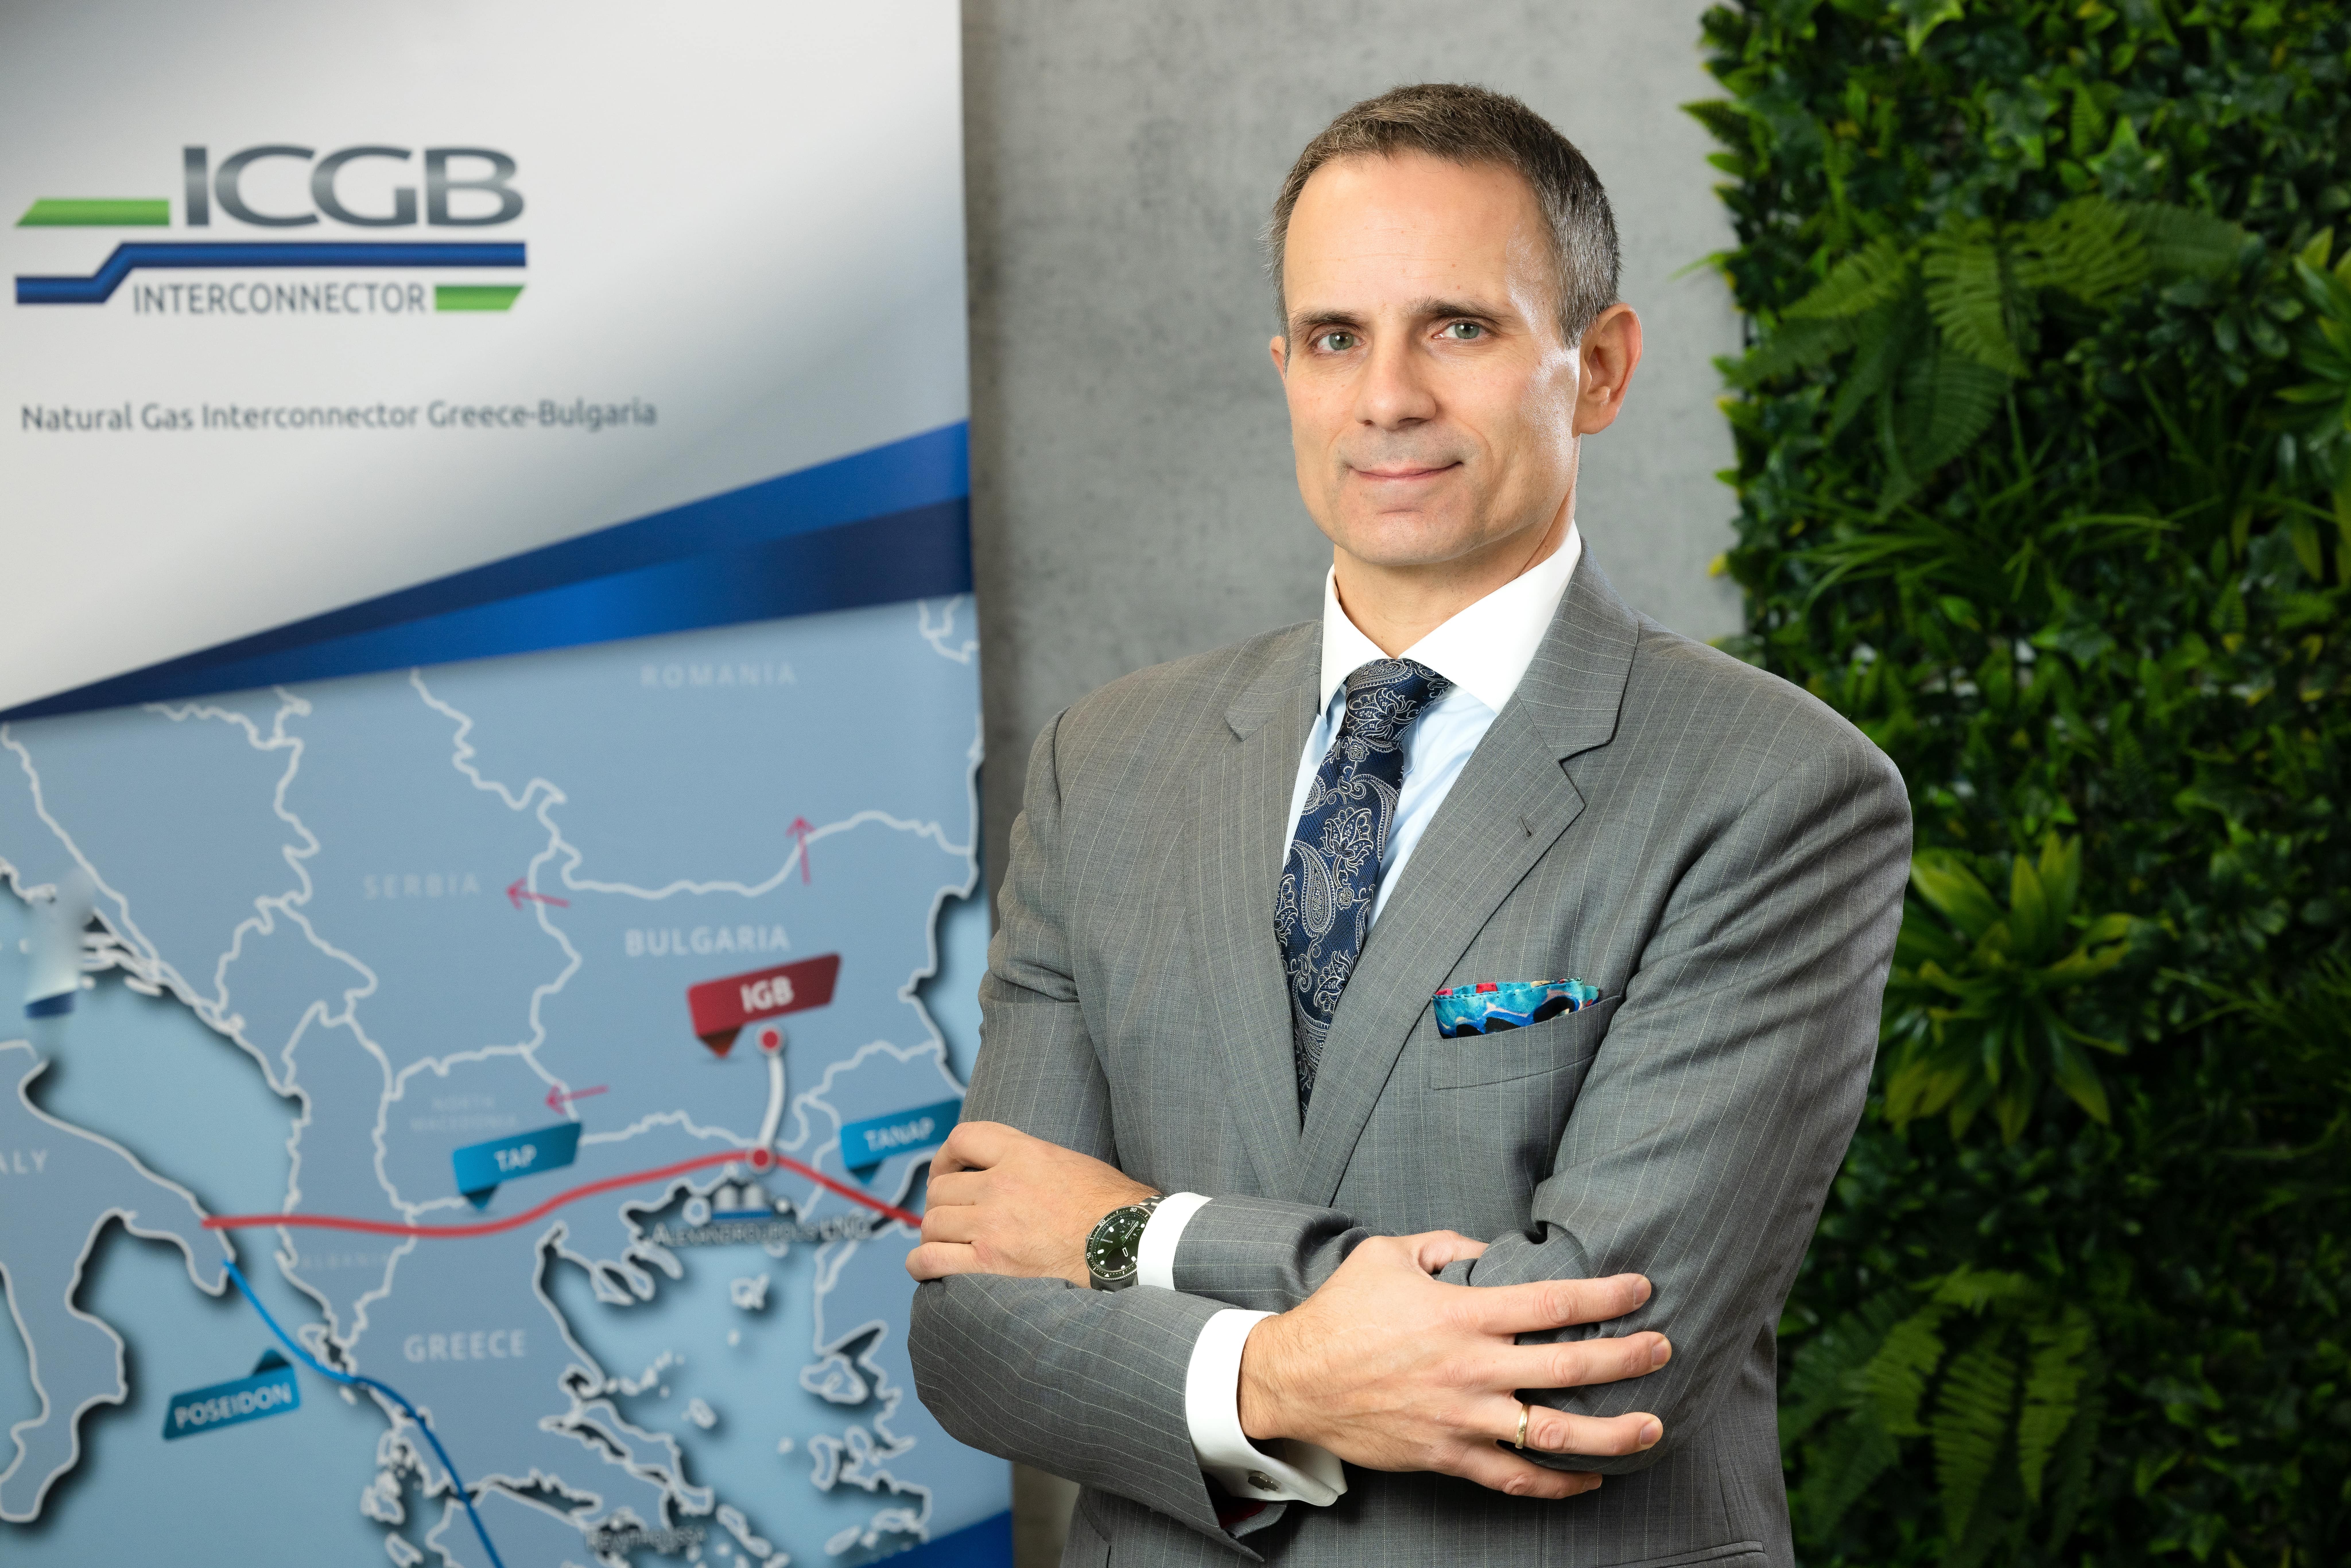 Дружеството  ICGB (Interconnector Greece – Bulgaria) вече е започнало пазарни